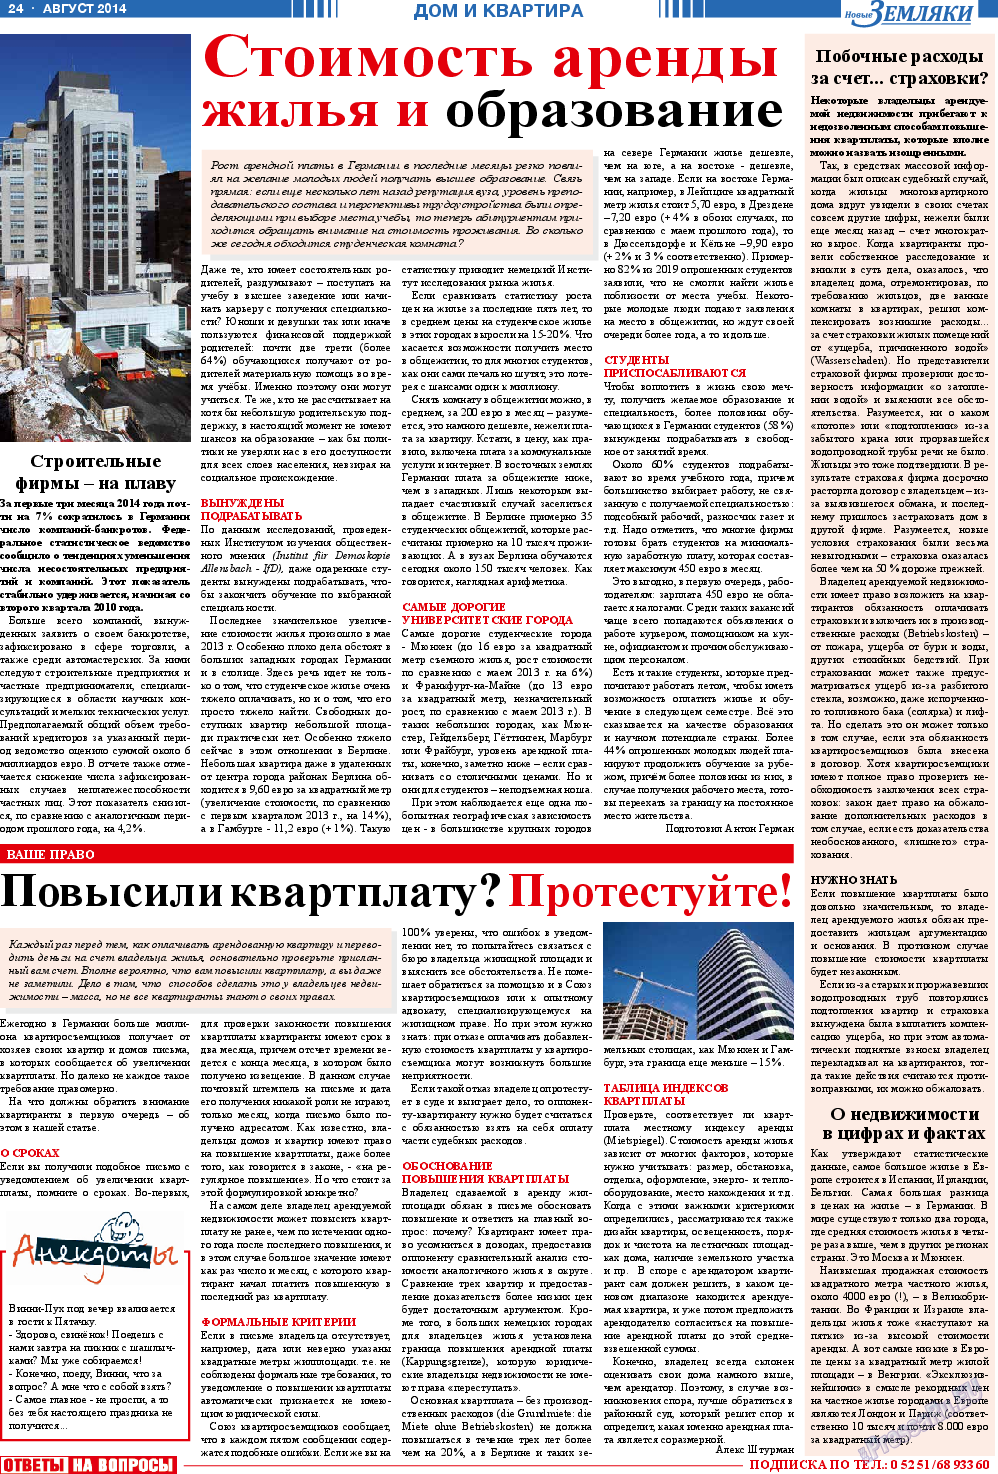 Новые Земляки (газета). 2014 год, номер 8, стр. 24